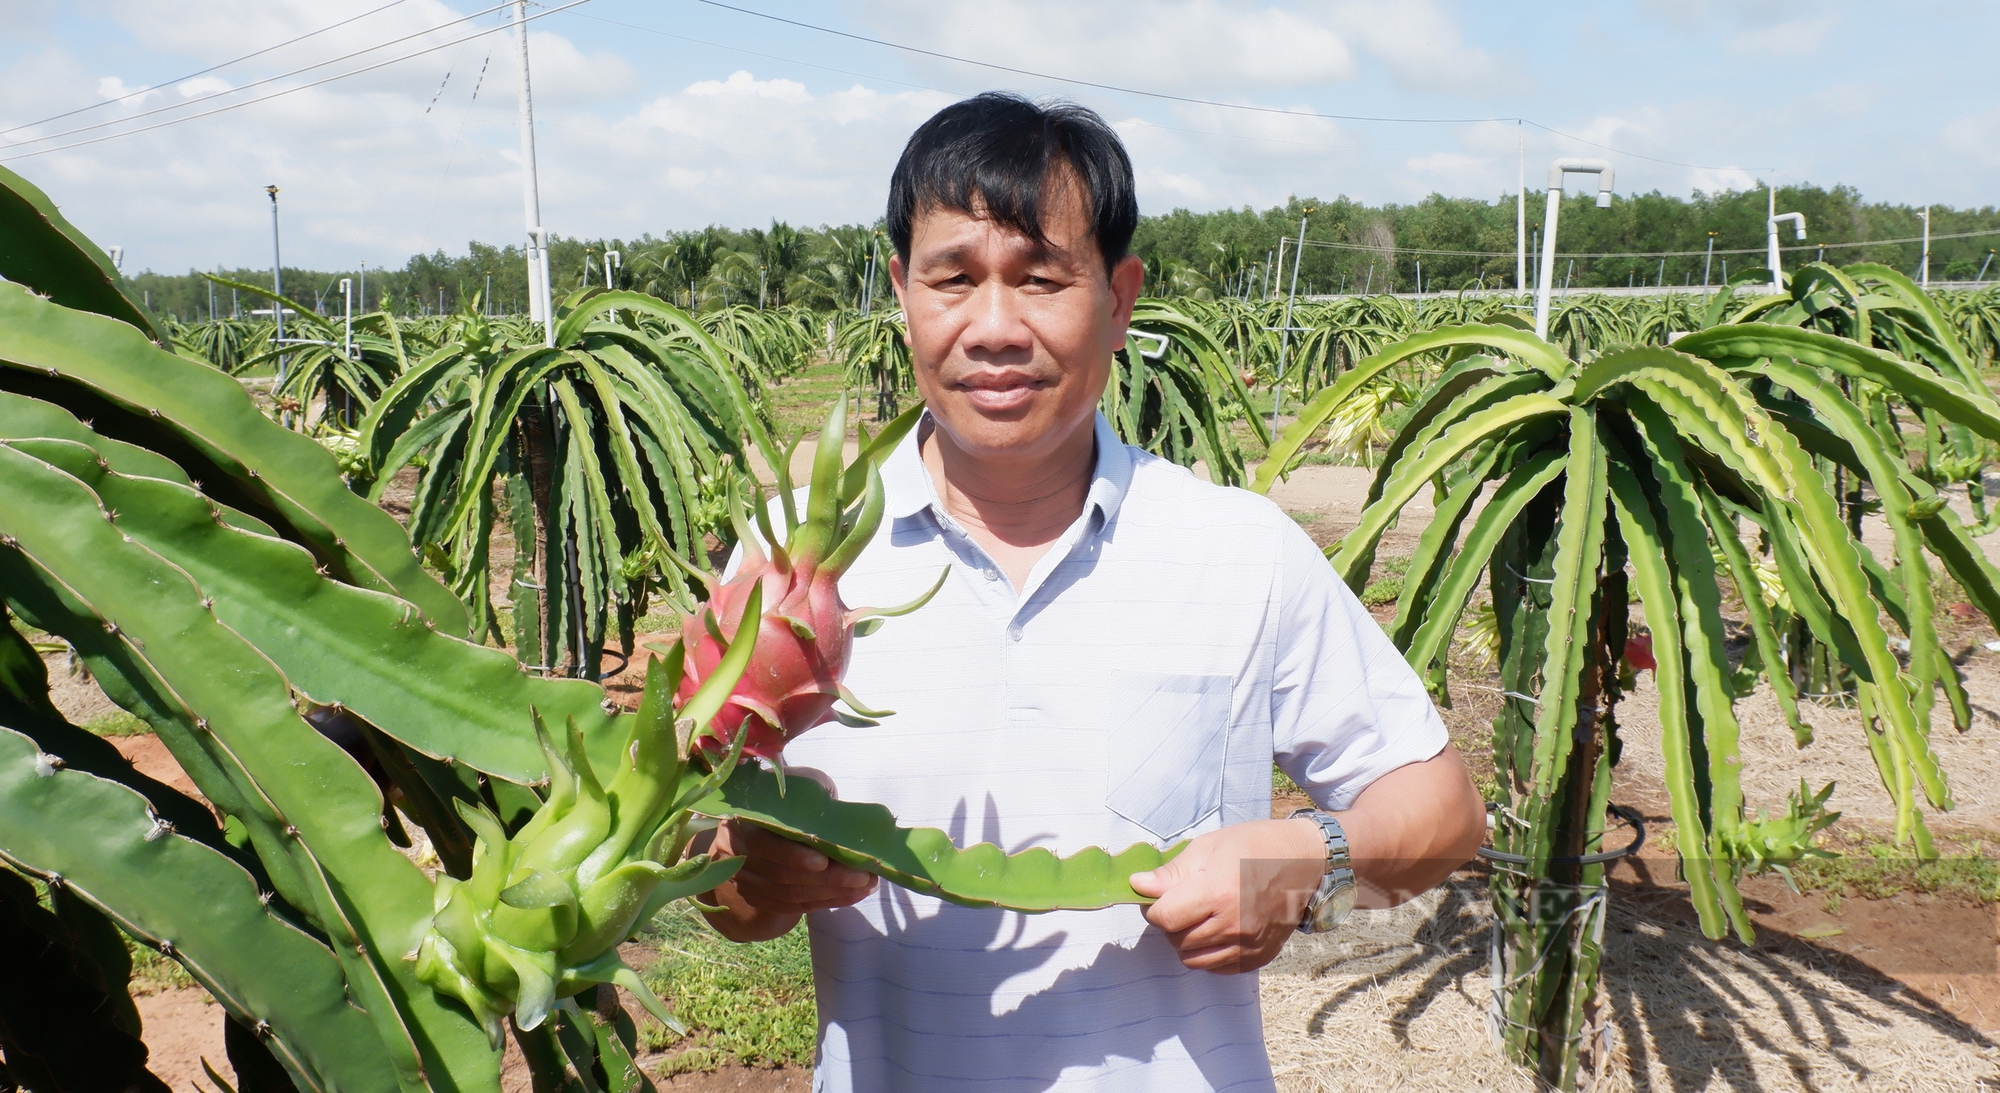 Bình Thuận phấn đấu có 10.500 ha thanh long đạt tiêu chuẩn VietGAP để xuất khẩu - Ảnh 3.